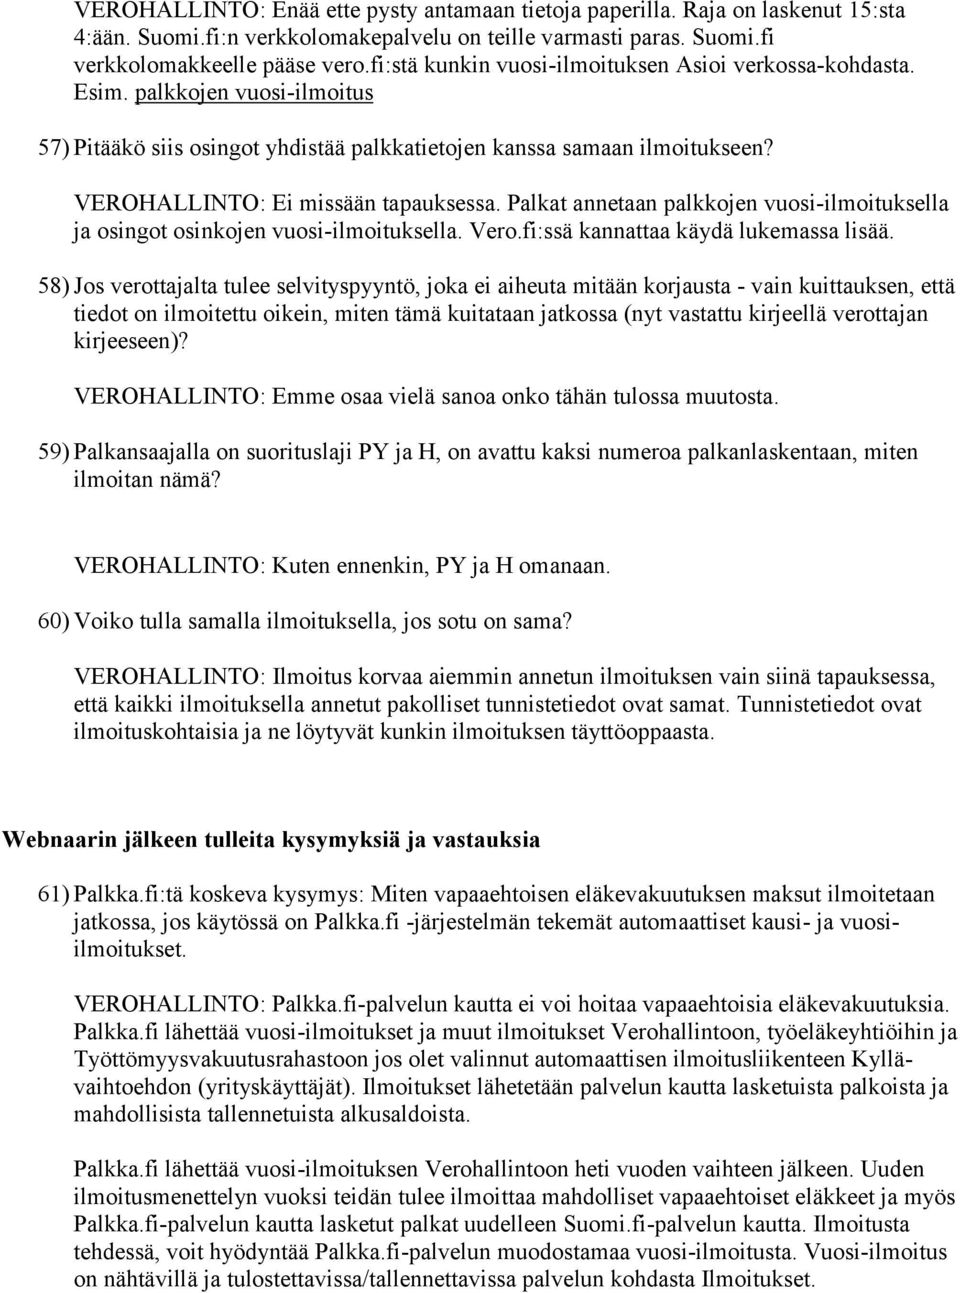 VEROHALLINTO: Ei missään tapauksessa. Palkat annetaan palkkojen vuosi-ilmoituksella ja osingot osinkojen vuosi-ilmoituksella. Vero.fi:ssä kannattaa käydä lukemassa lisää.